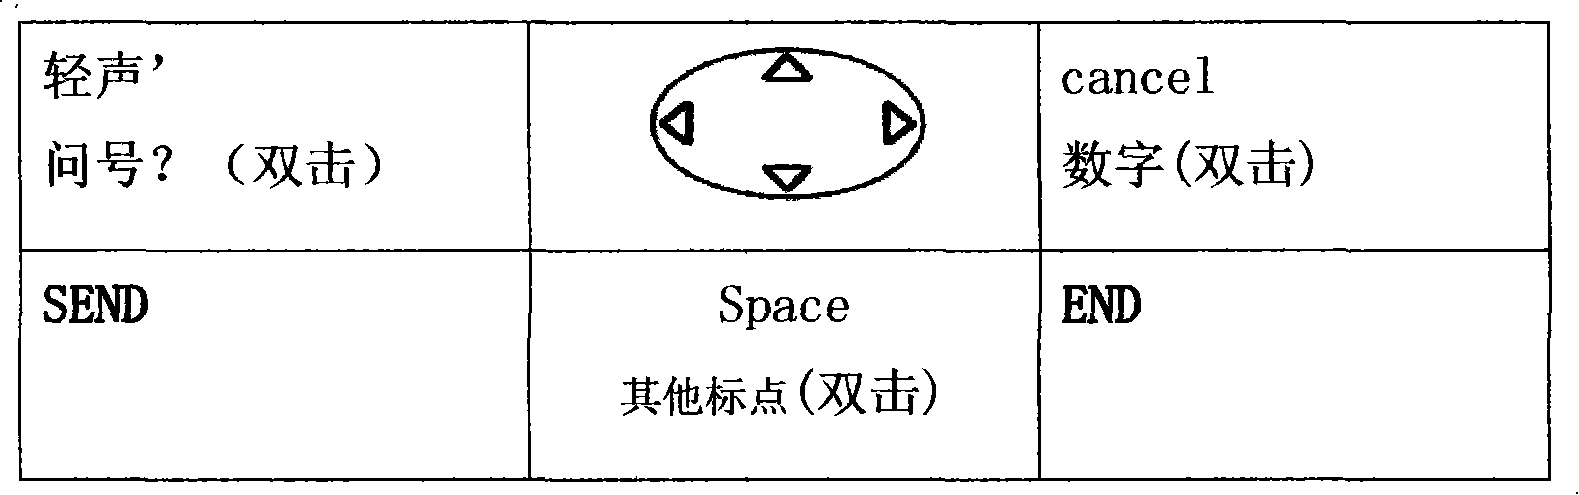 Chinese phonetic writing, phonetic symbol and input method